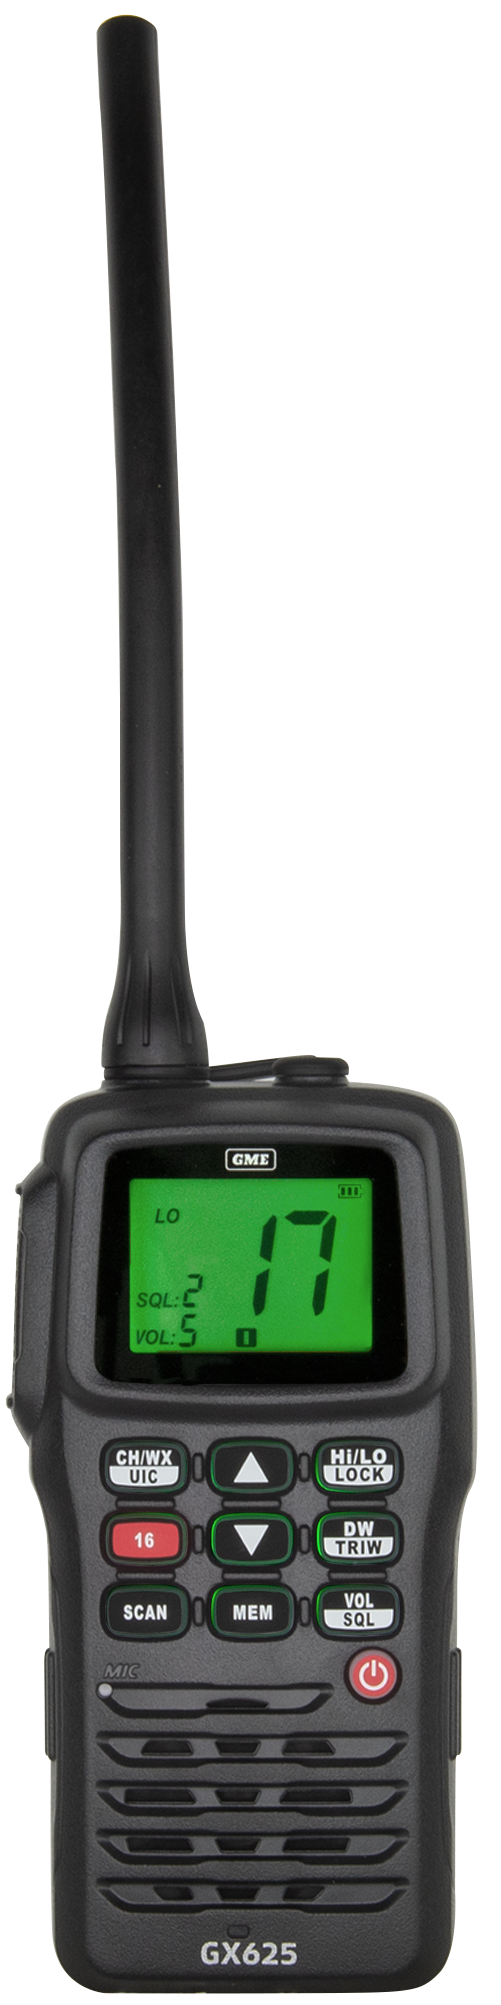 GX625 VHF Marine Handheld Radio